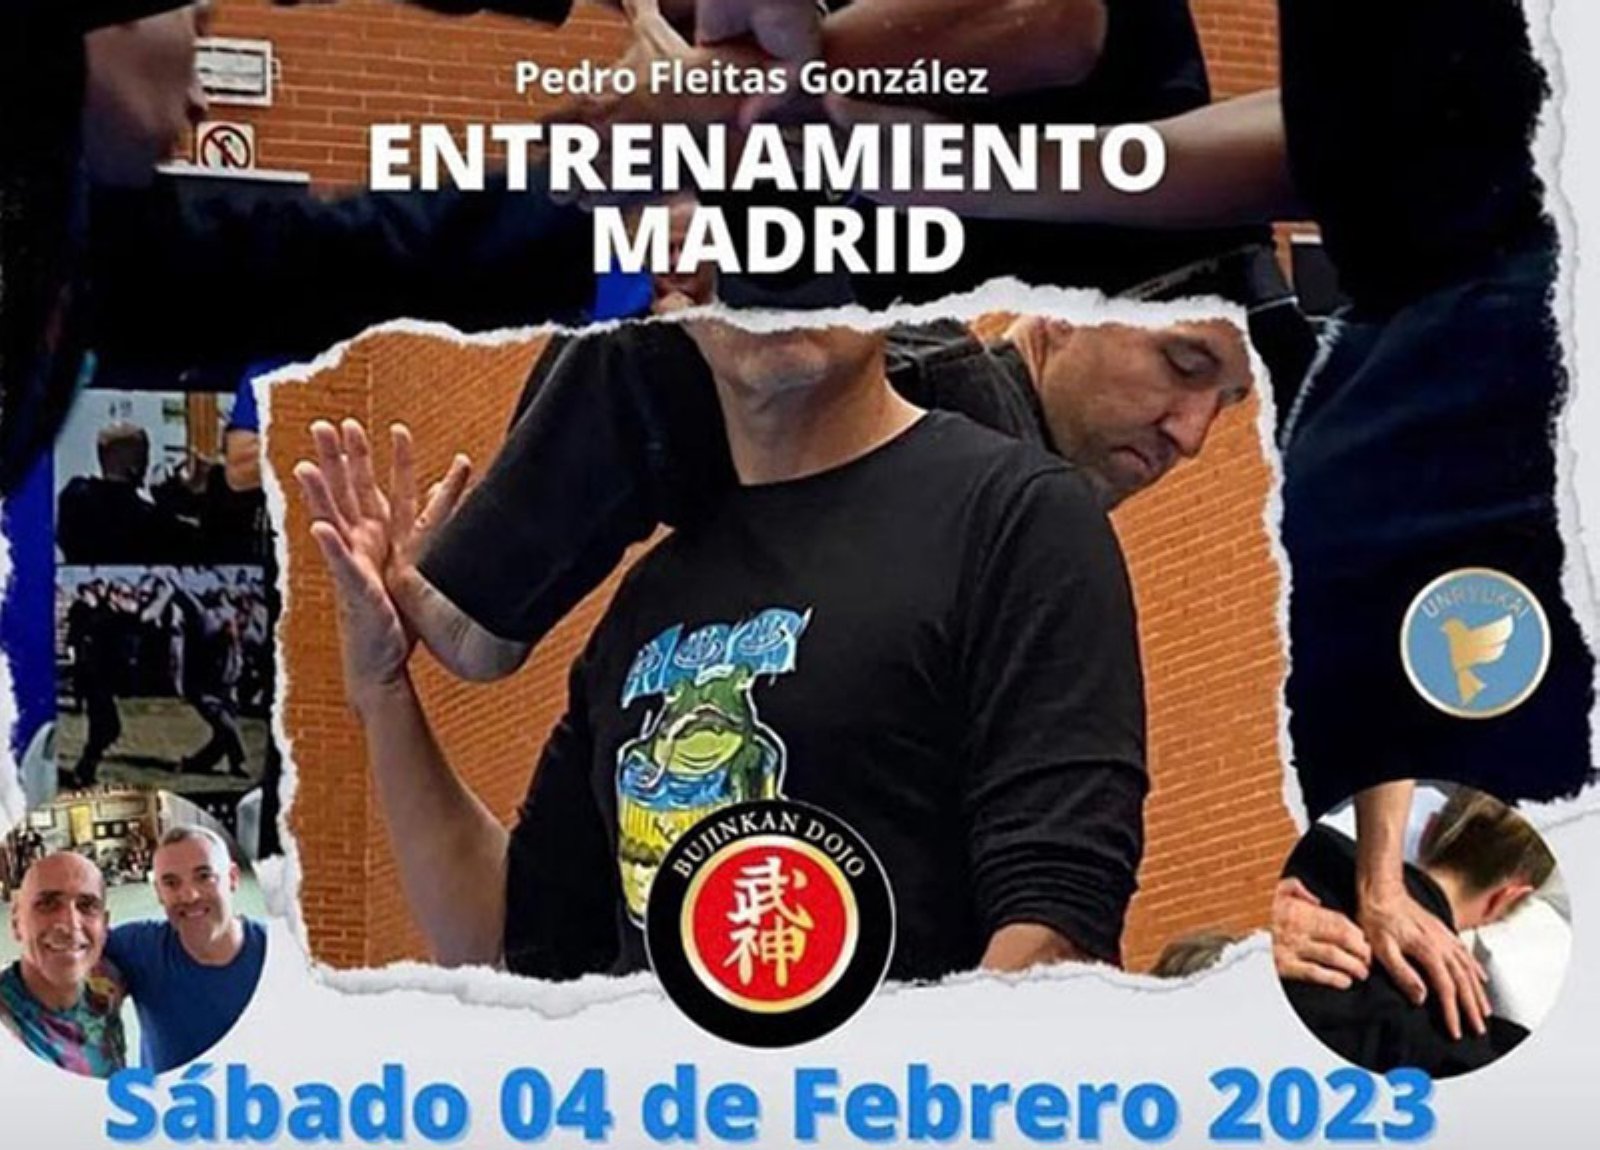 Entreno de Budo y Ninja Ryoho en Madrid con Pedro Fleitas